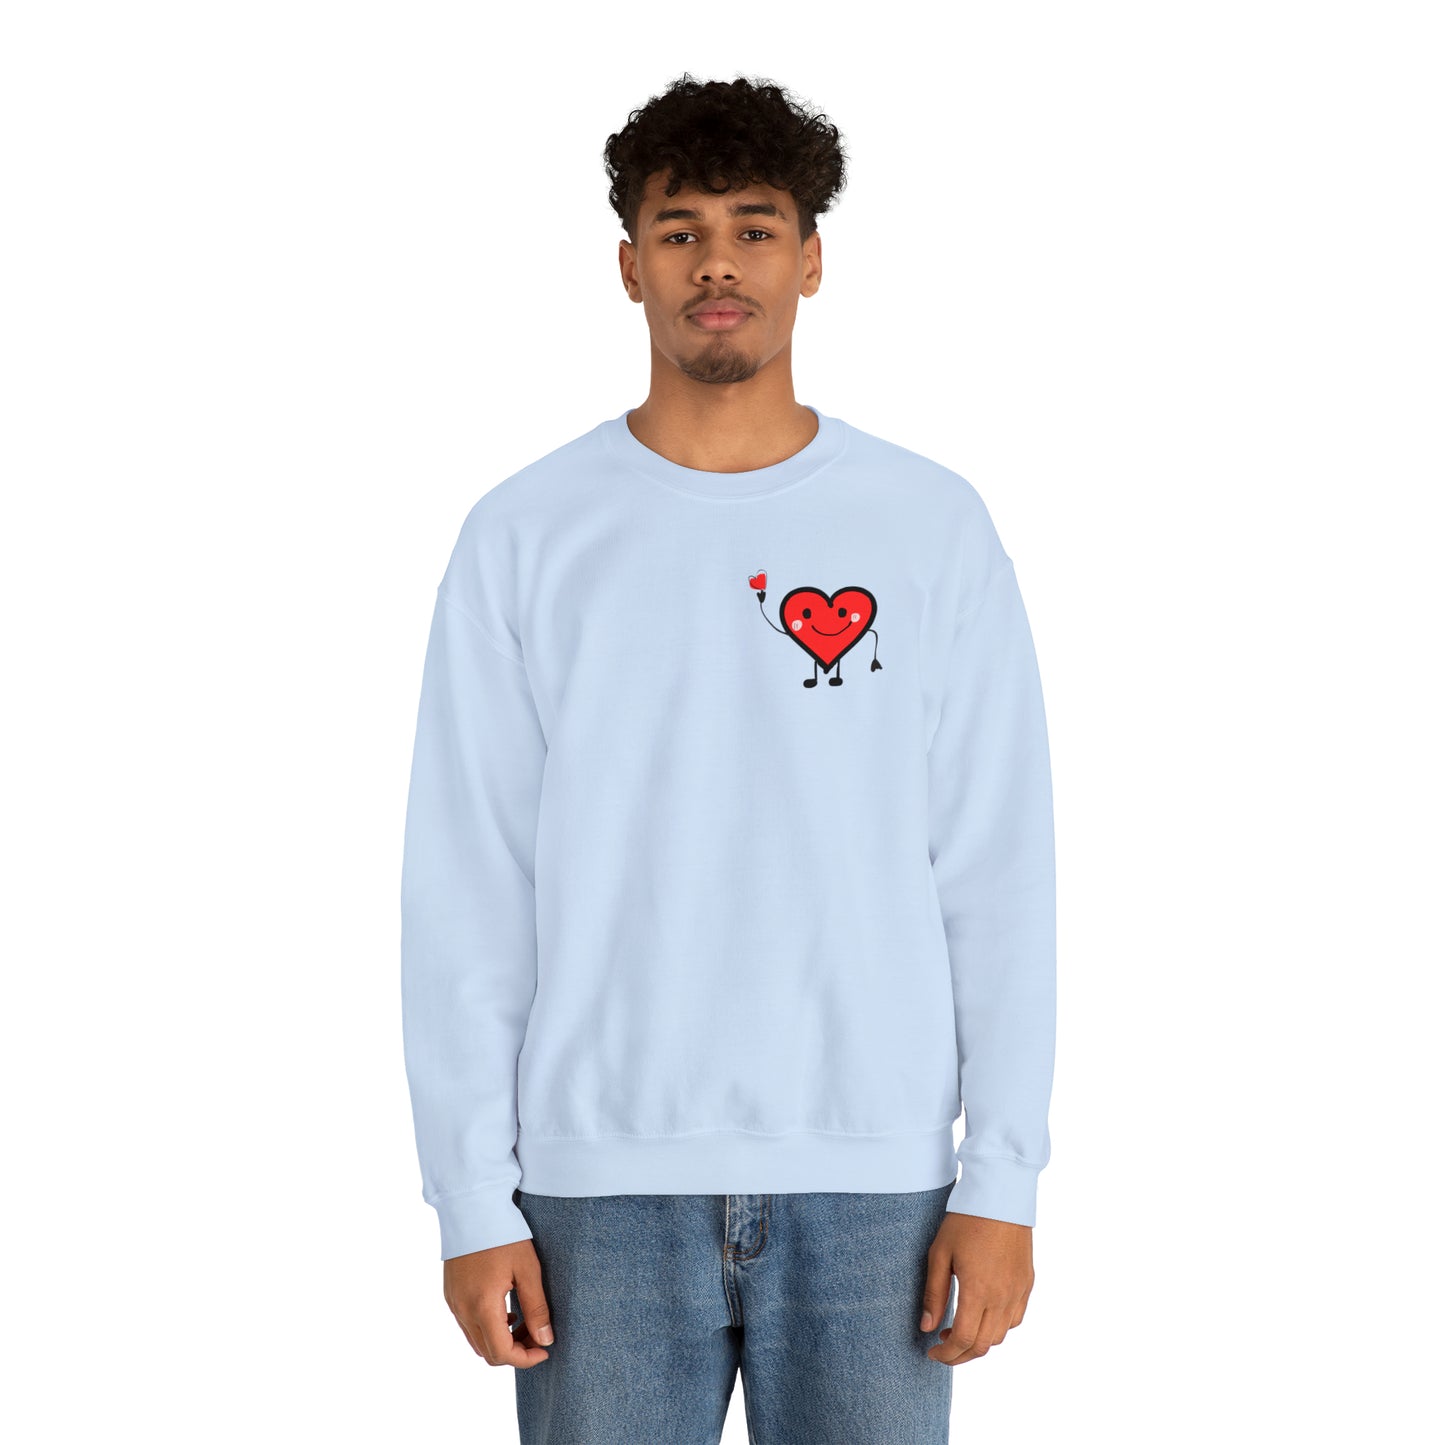 Spread Love Crewneck Sweatshirt